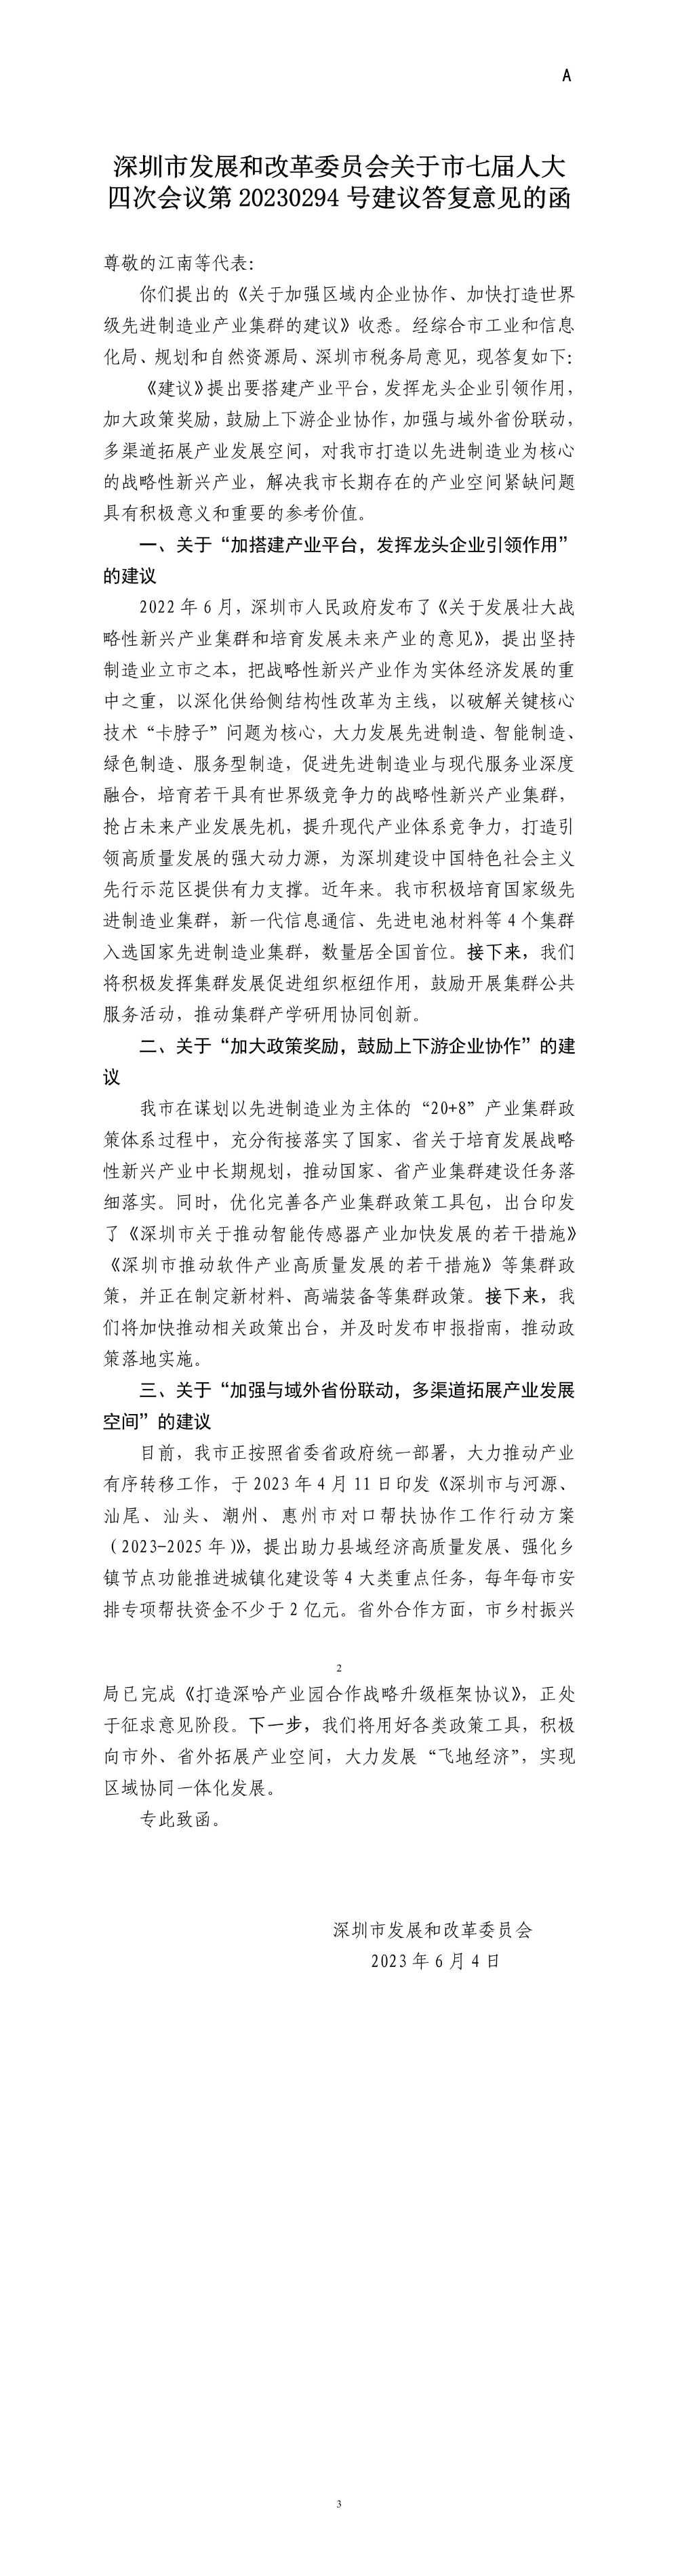 深圳市发展和改革委员会关于市七届人大四次会议第20230294号建议答复意见的函.jpg